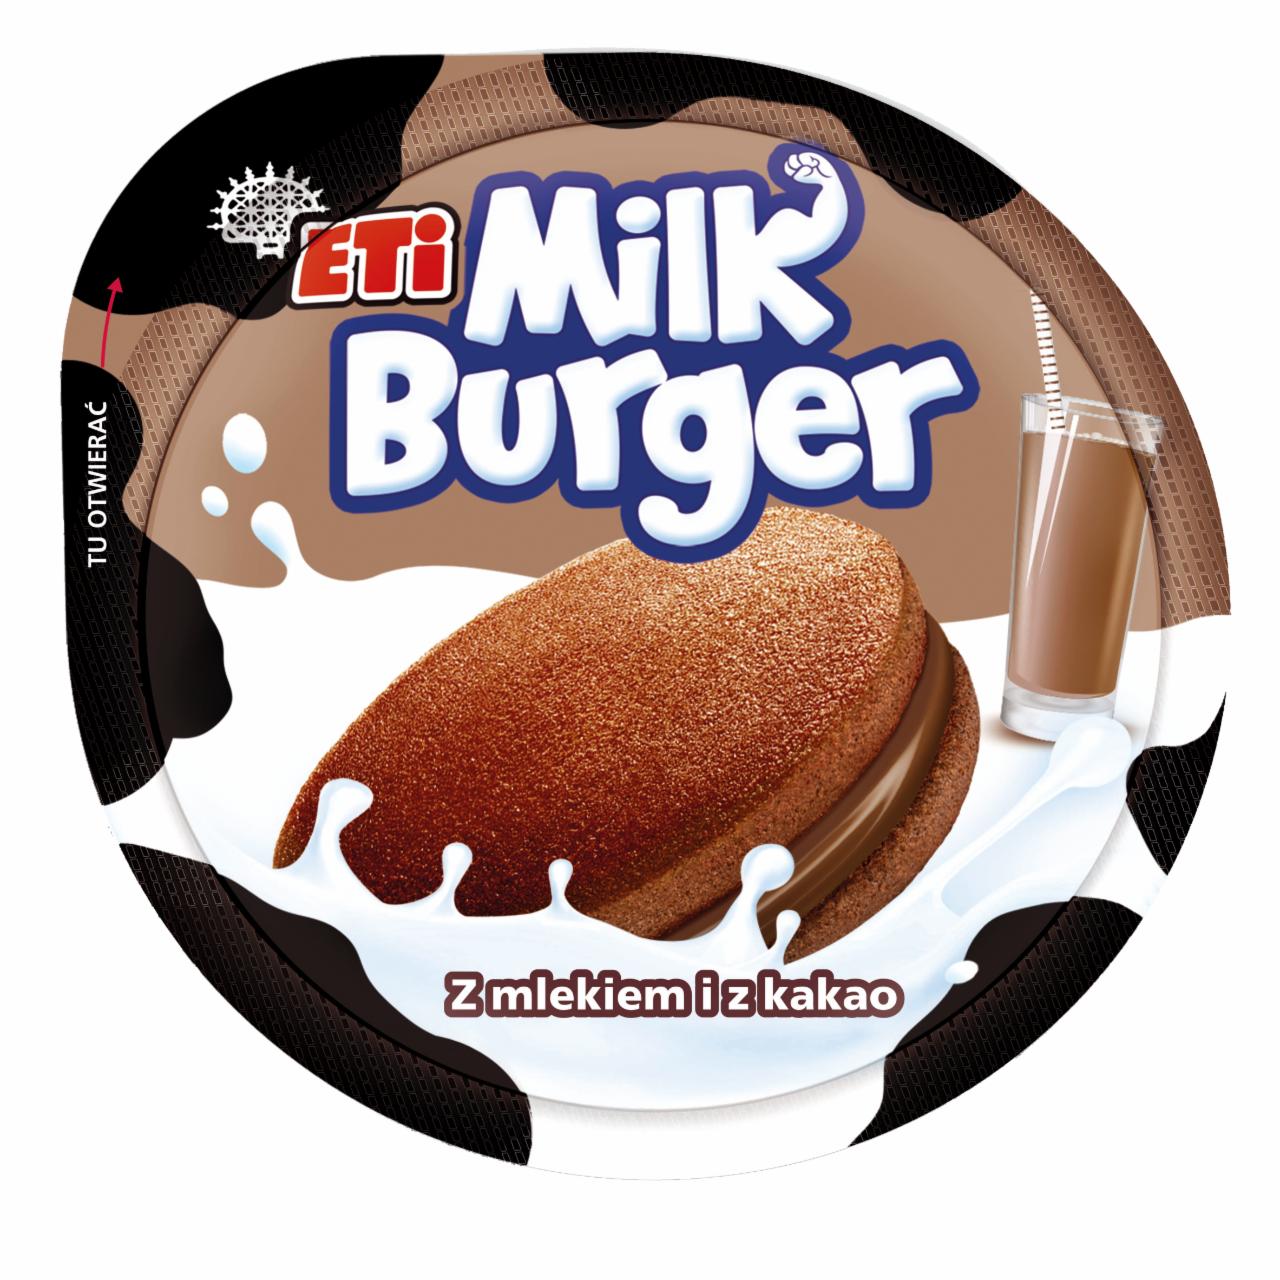 Фото - Burger Ciastko z mlekiem i z kakao Eti Milk